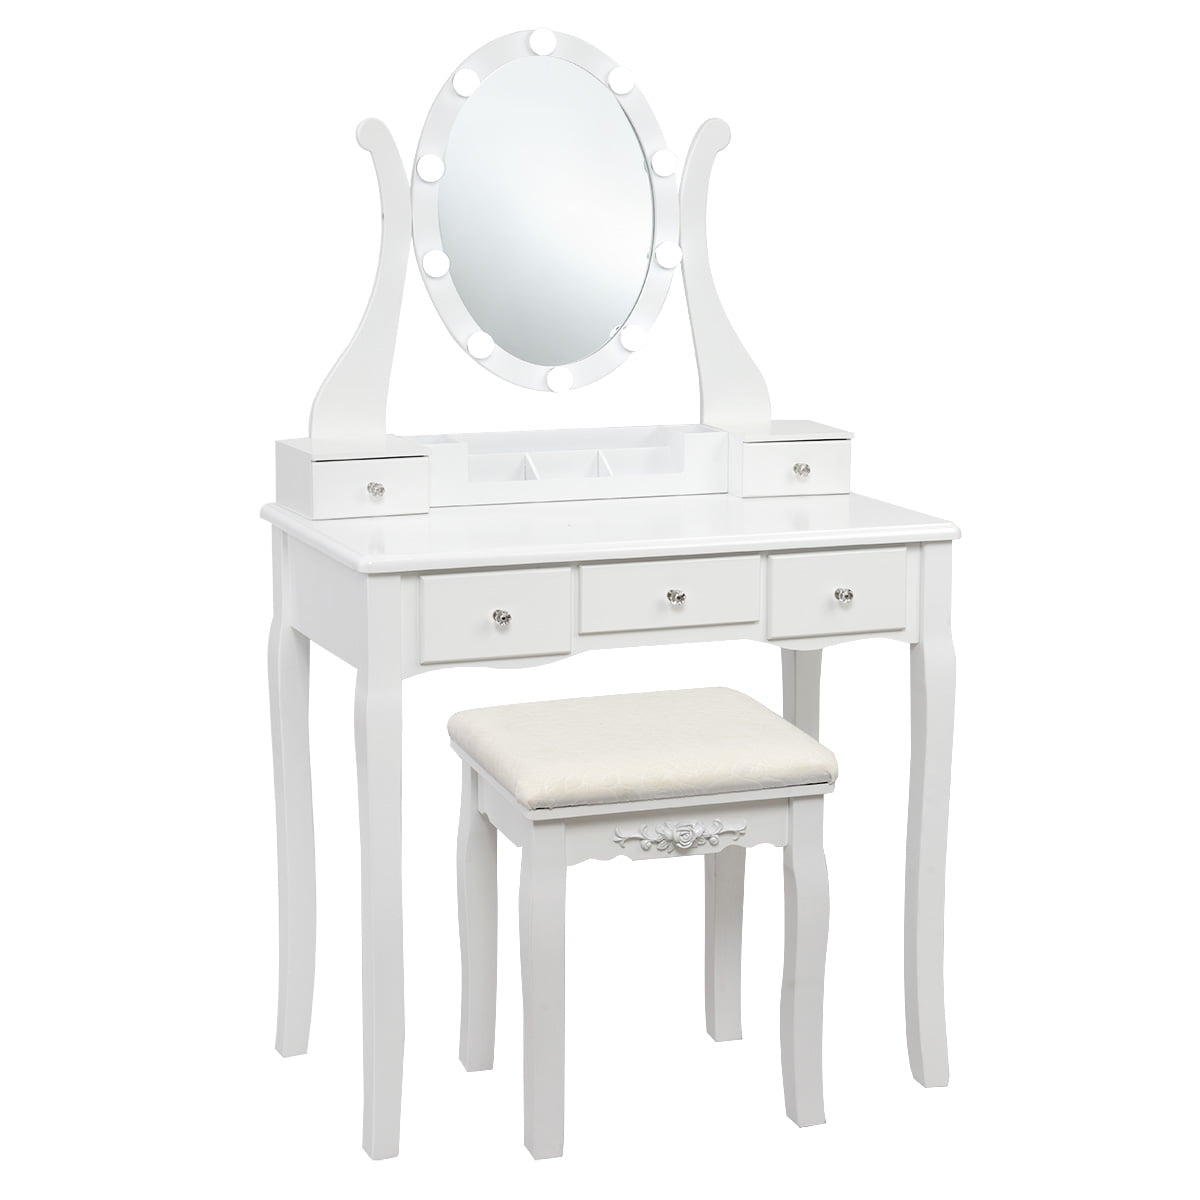 Nishano Dressing Table 1 Drawer Stool White Mirror Bedroom Makeup Desk Dresser